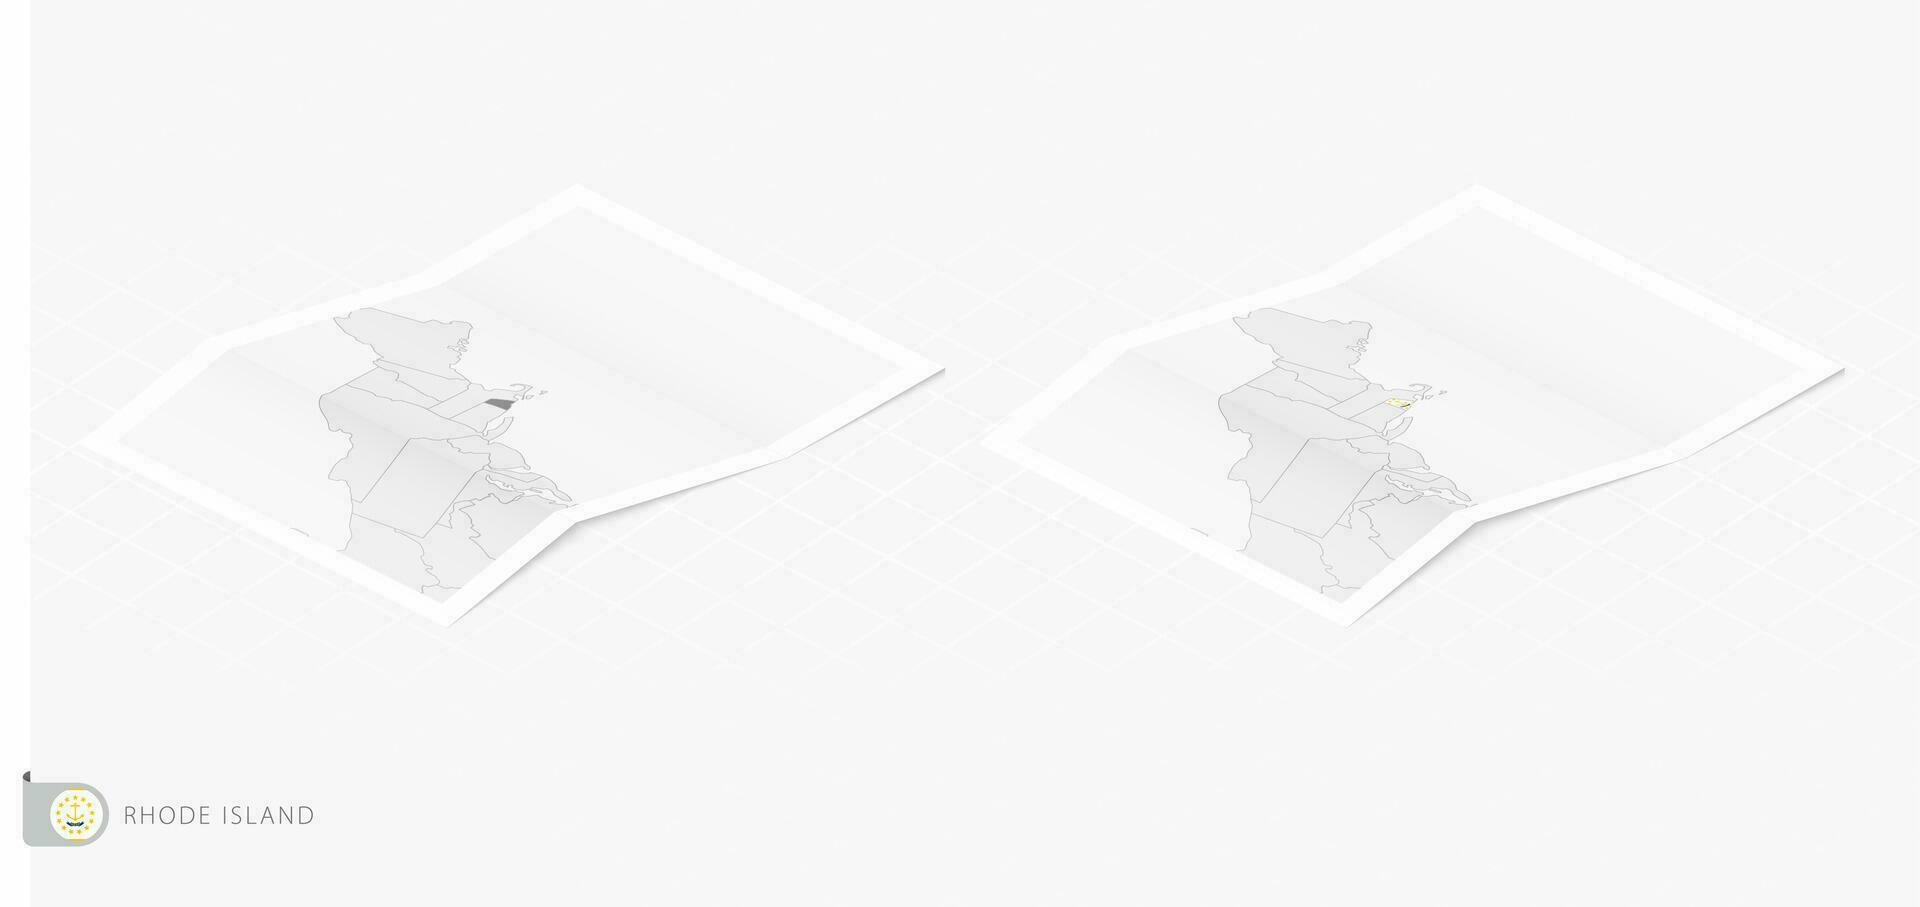 impostato di Due realistico carta geografica di rhode isola con ombra. il bandiera e carta geografica di rhode isola nel isometrico stile. vettore